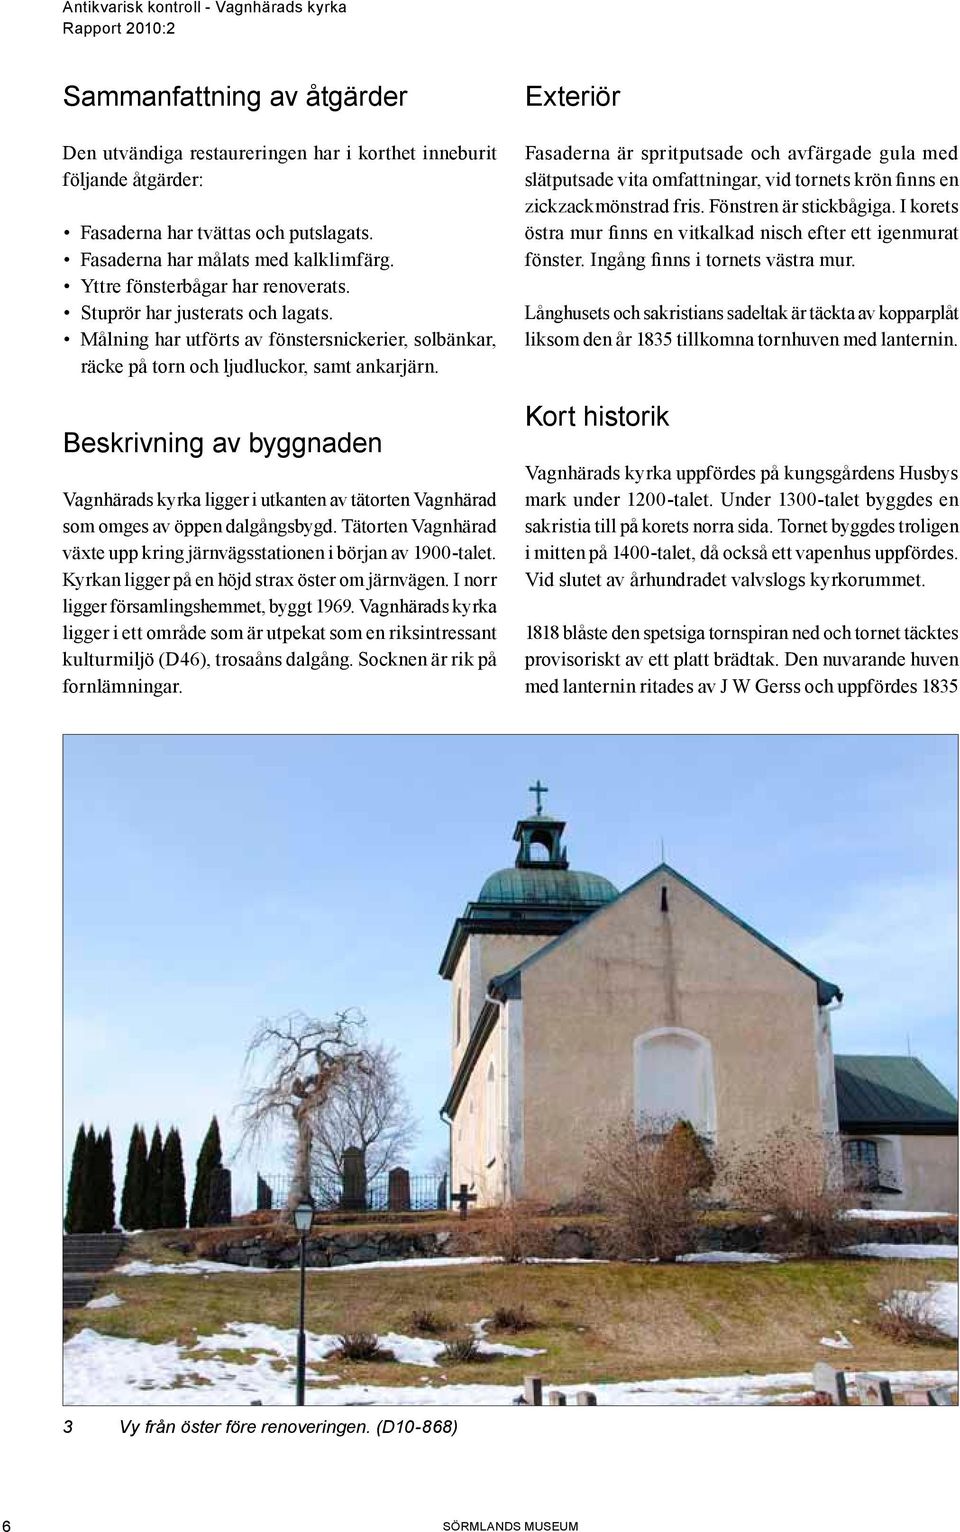 Beskrivning av byggnaden Vagnhärads kyrka ligger i utkanten av tätorten Vagnhärad som omges av öppen dalgångsbygd. Tätorten Vagnhärad växte upp kring järnvägsstationen i början av 1900-talet.